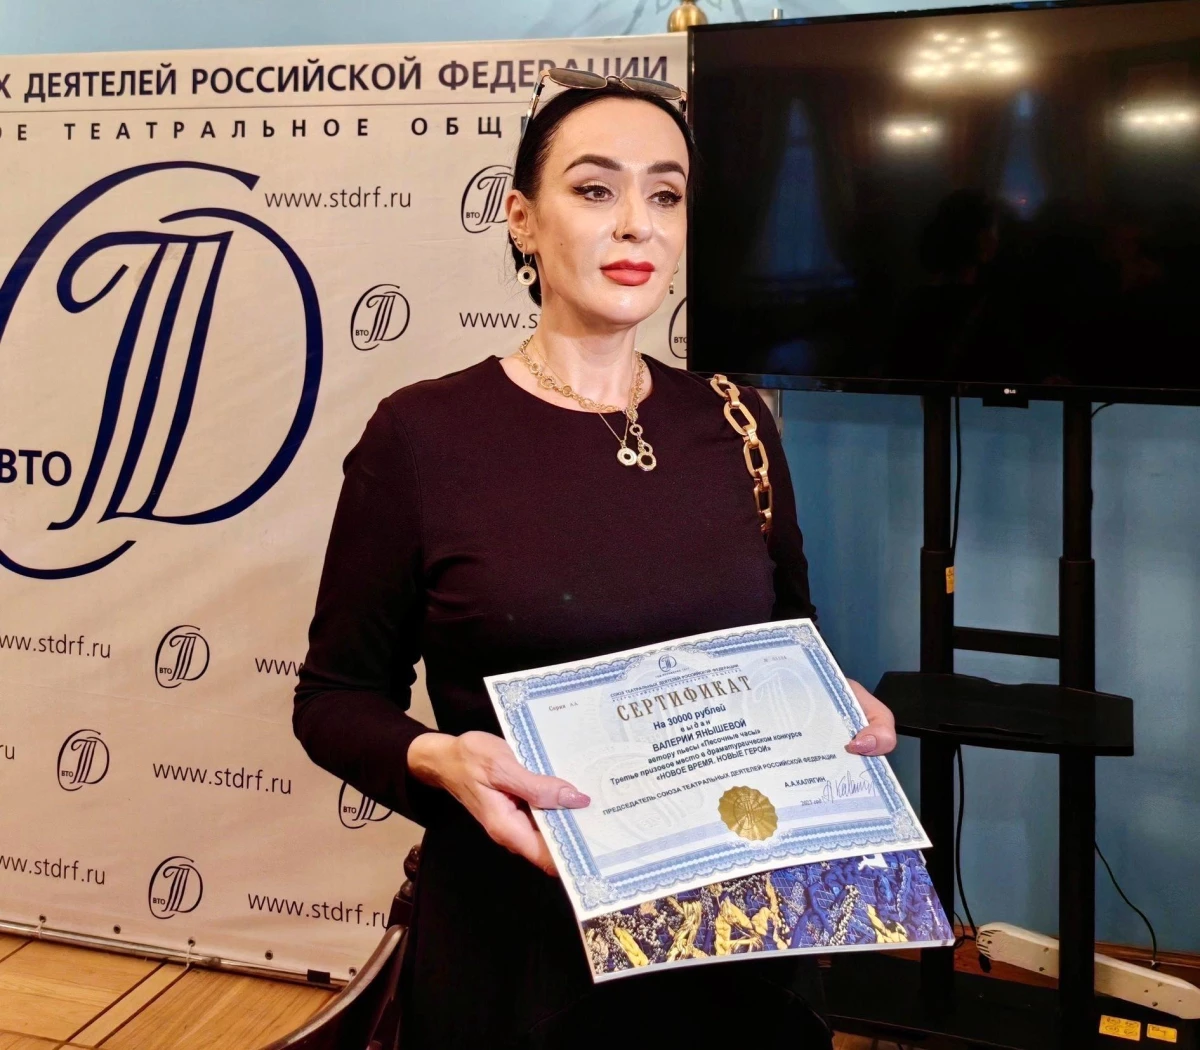 Kremlin yanlısı tiyatro oyunları genç Ukraynalıları hedef alıyor: \'Geleneksel Rus değerlerinin bir örneği\'